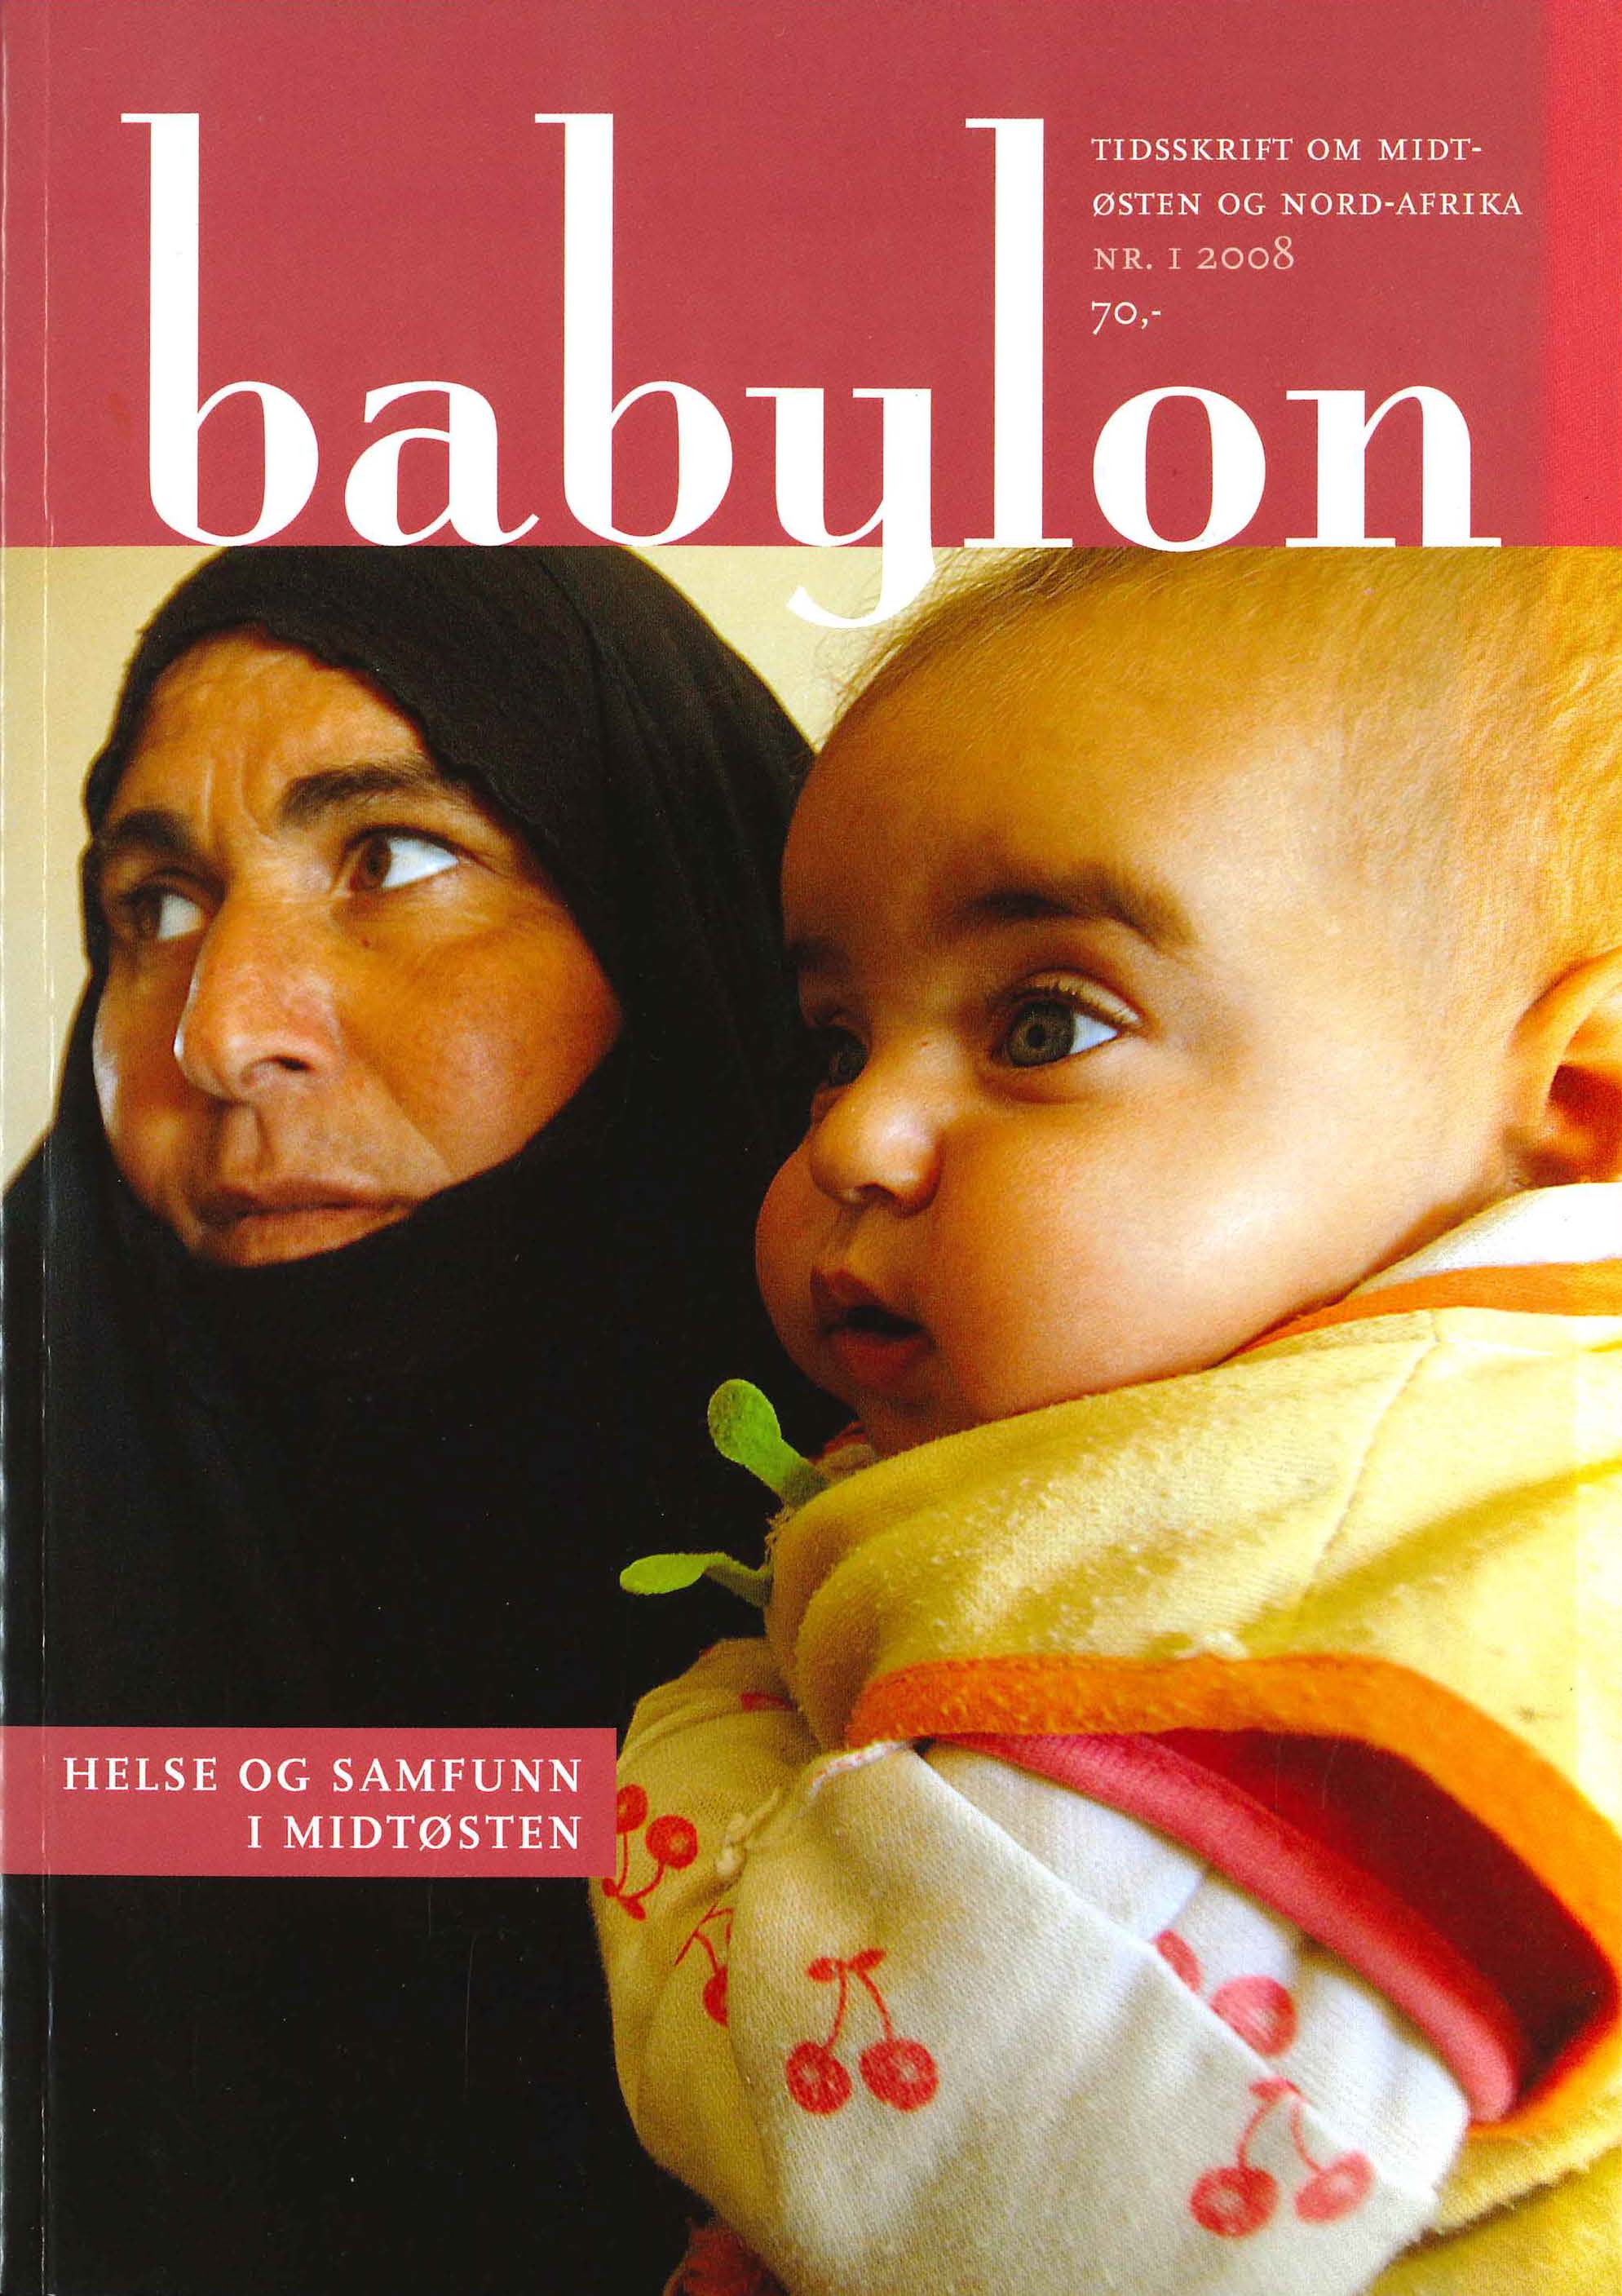 					Se Nr. 1 (2008): Helse og samfunn i Midtøsten
				